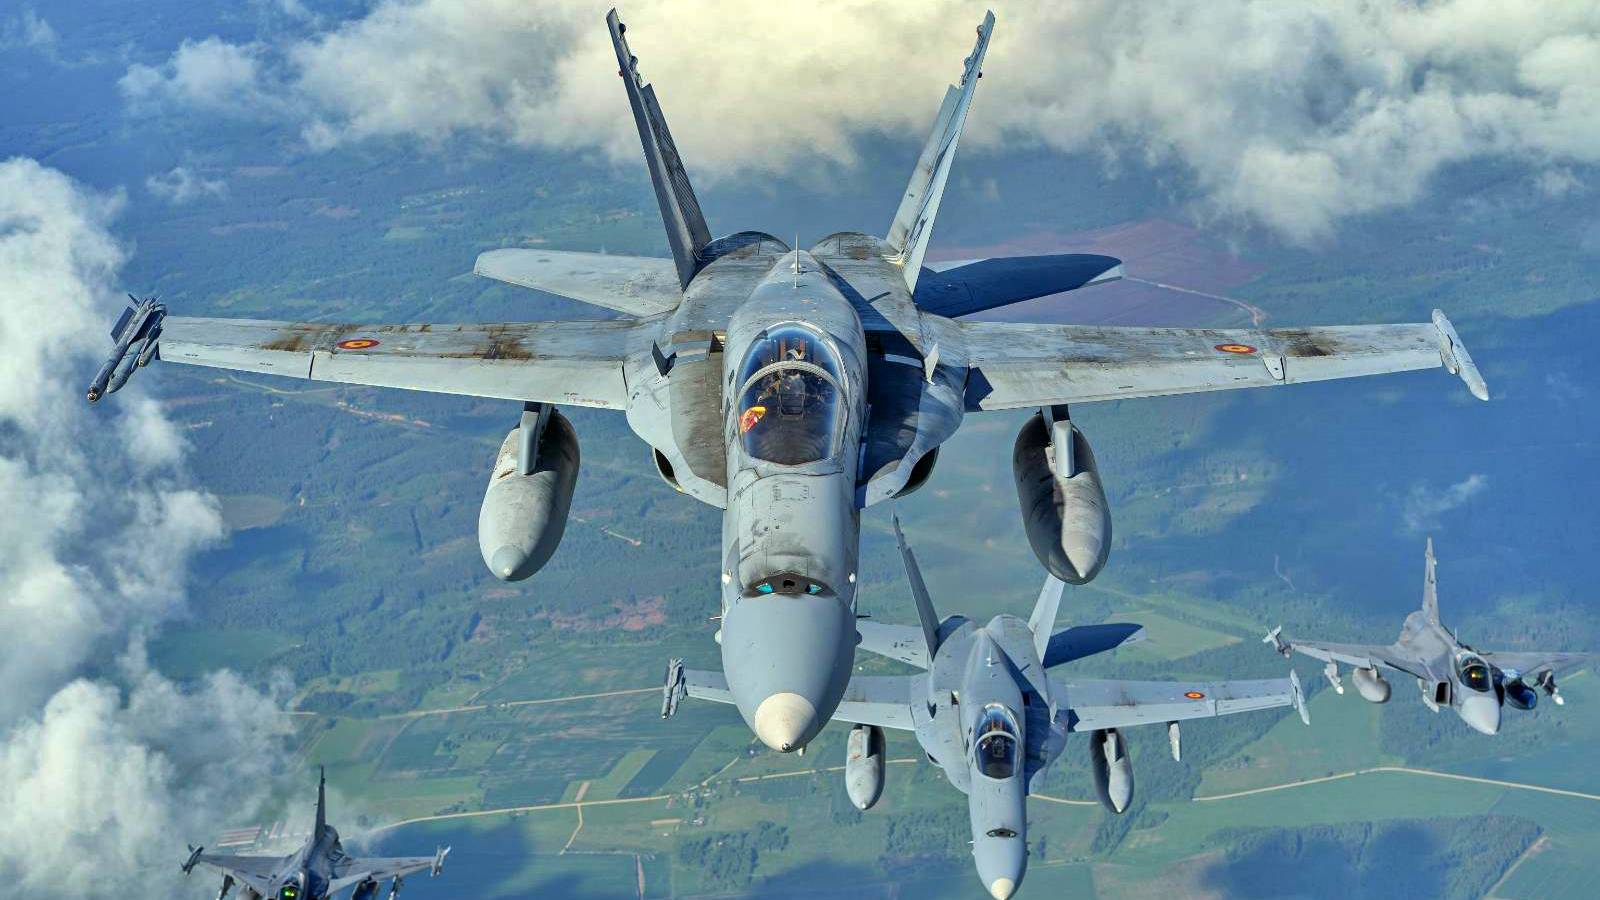 Le forze aeree dell'esercito rumeno stanno svolgendo un addestramento d'élite all'interno della NATO